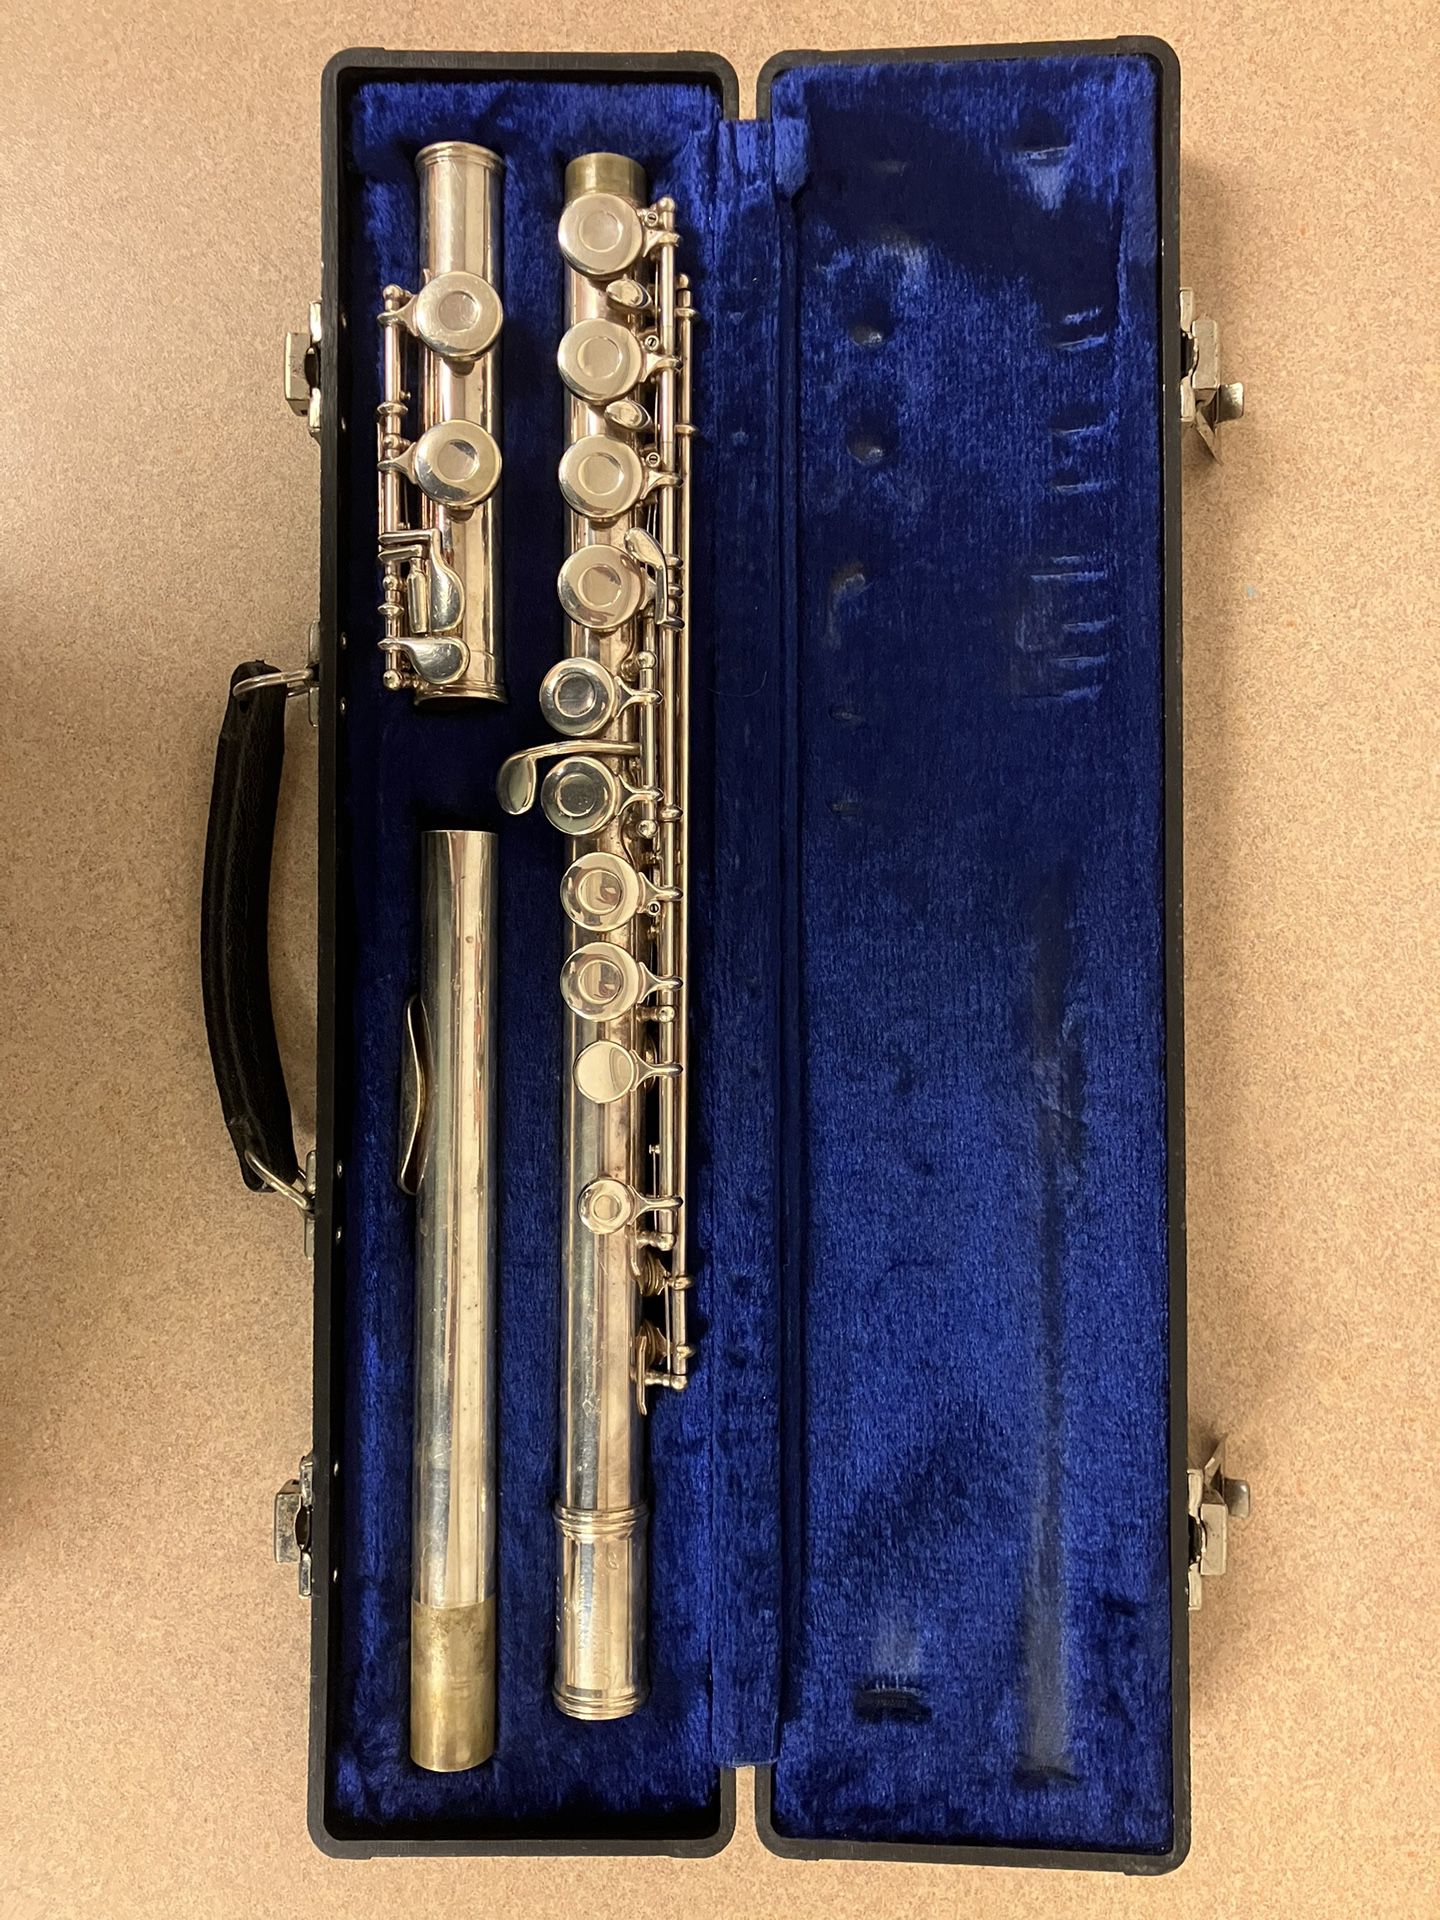 Gemeinhardt Flute 2sp ($479 New!)